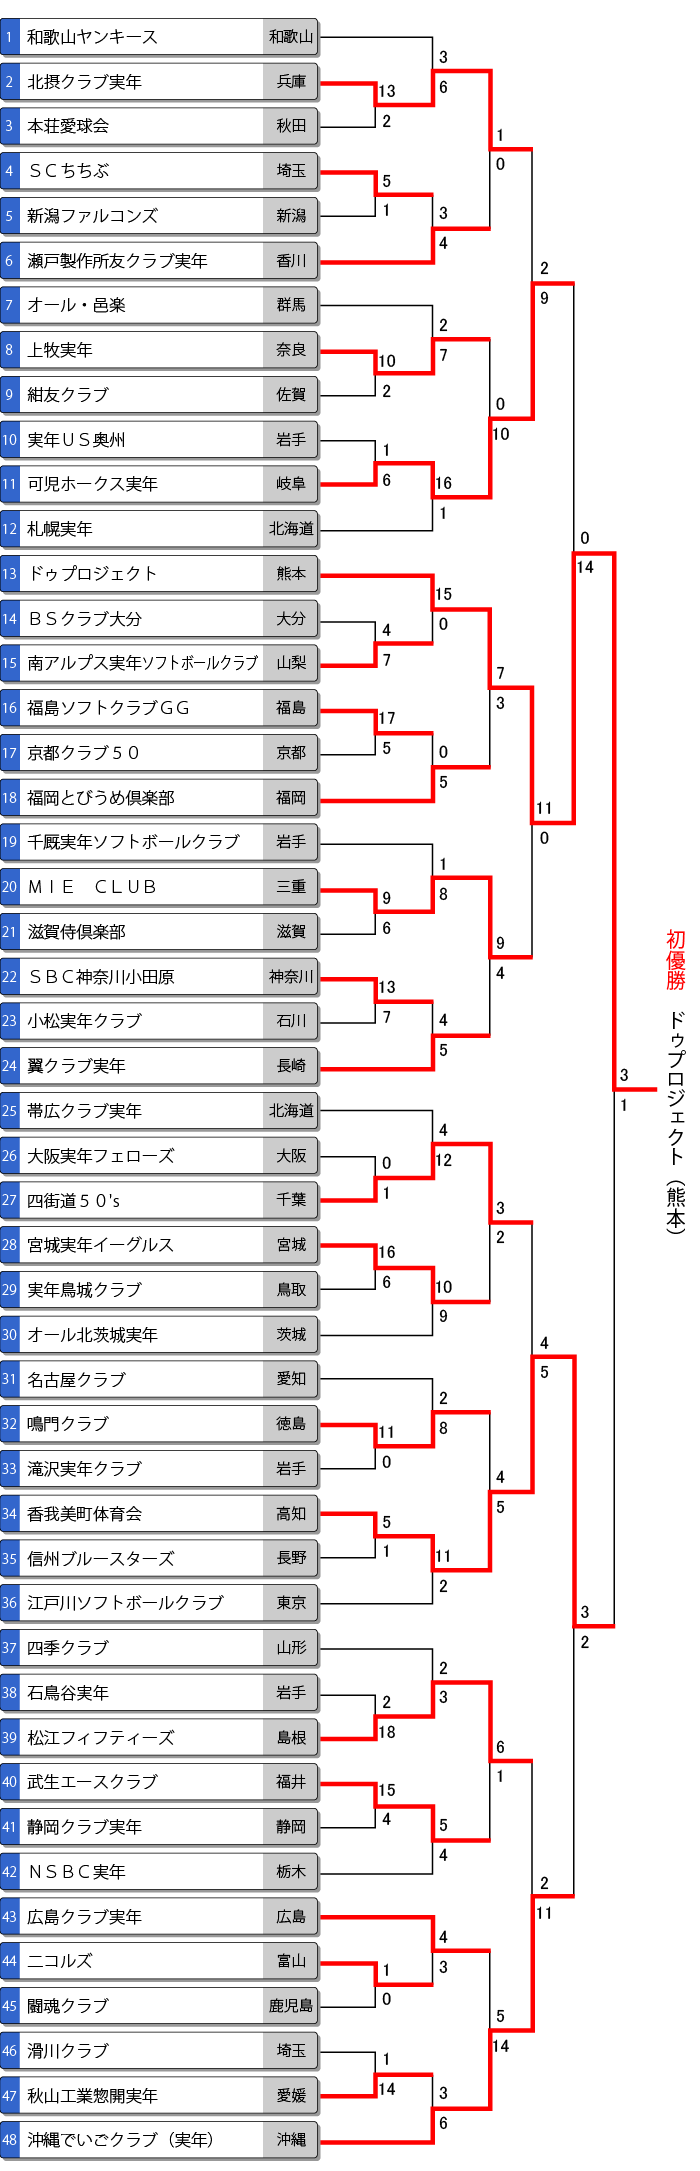 全日本実年大会トーナメント表